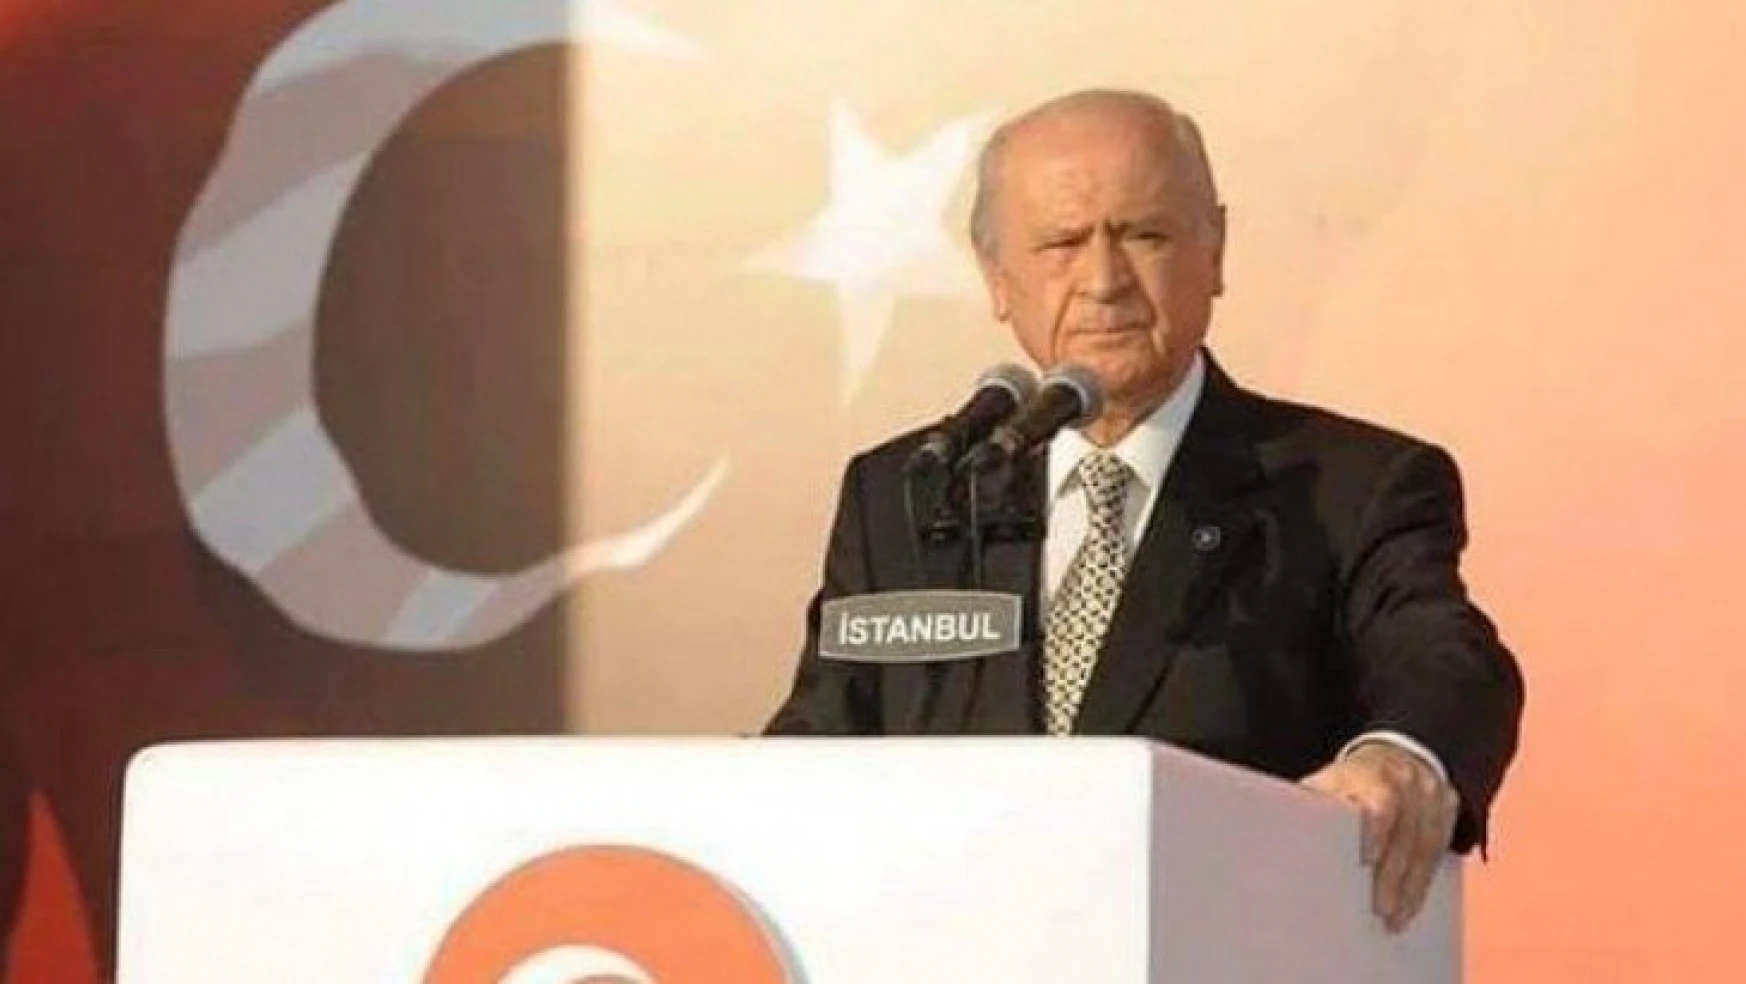 MHP Lideri Devlet Bahçeli, '101 kişinin ismini tek tek inceledim. Bildiri zehir ve zillet'